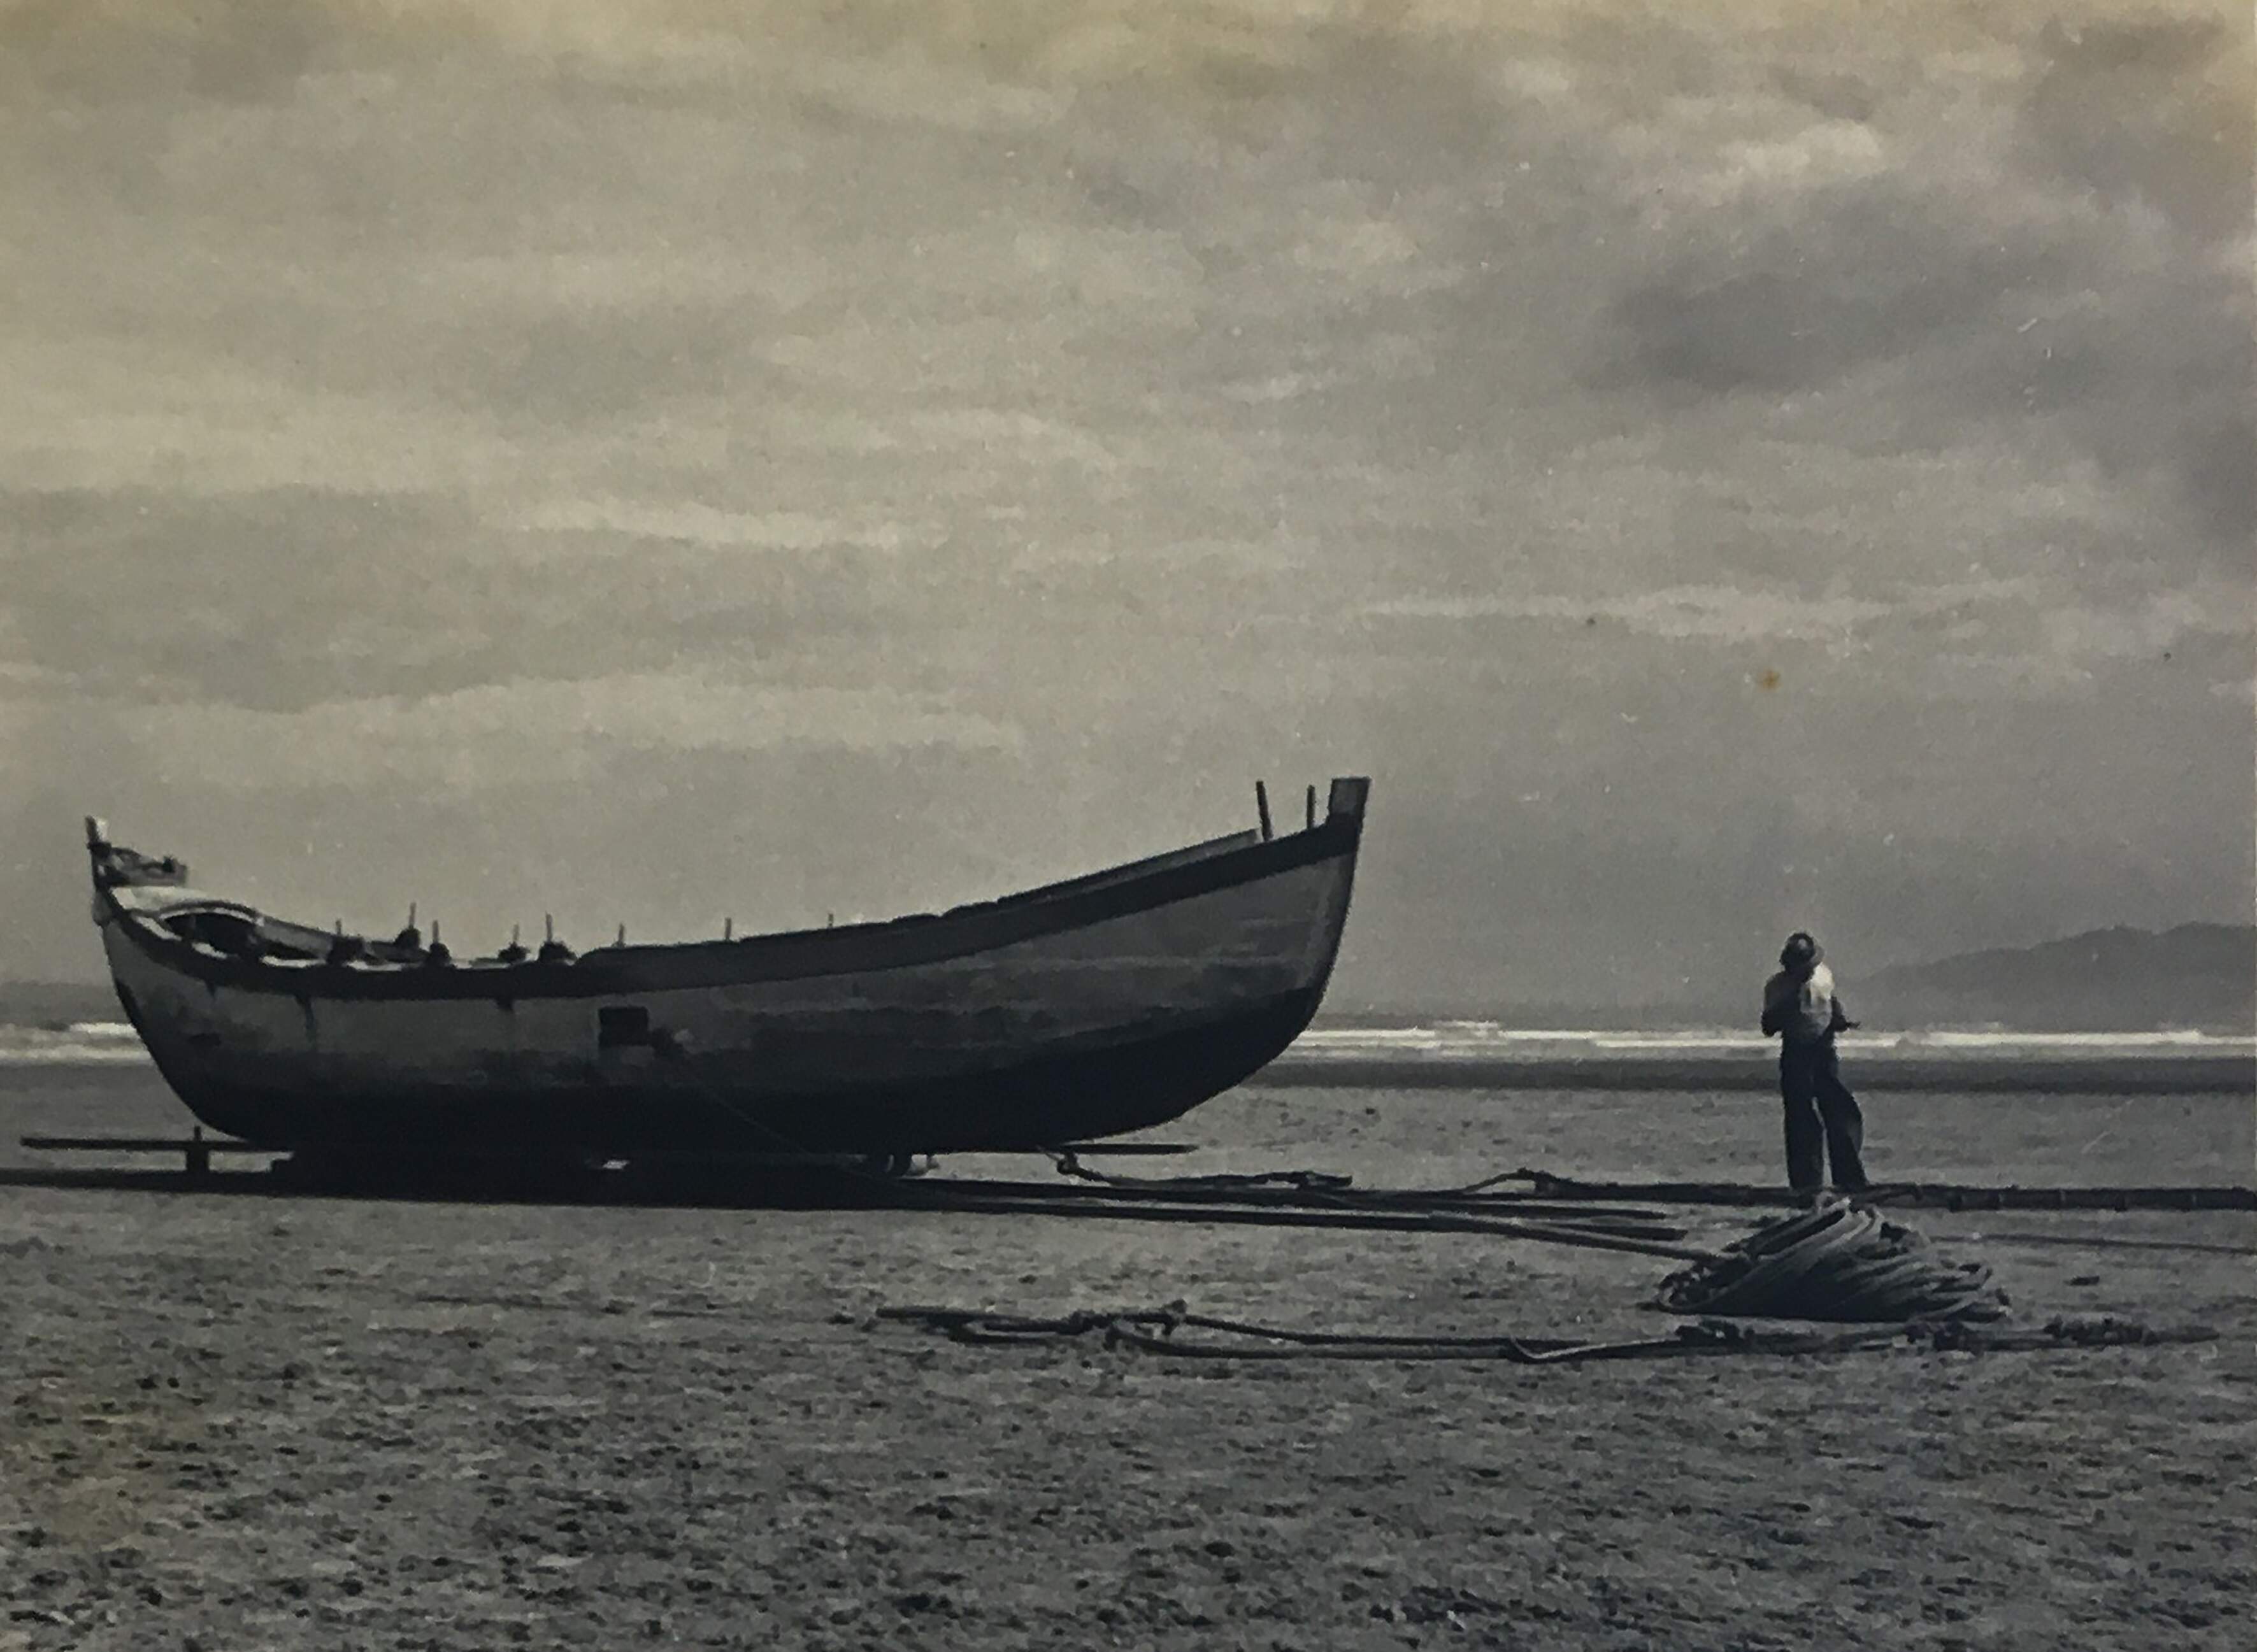 Boa parte da exposição de Ismael Alberto de Souza explora o mar e suas atividades, como as barcas